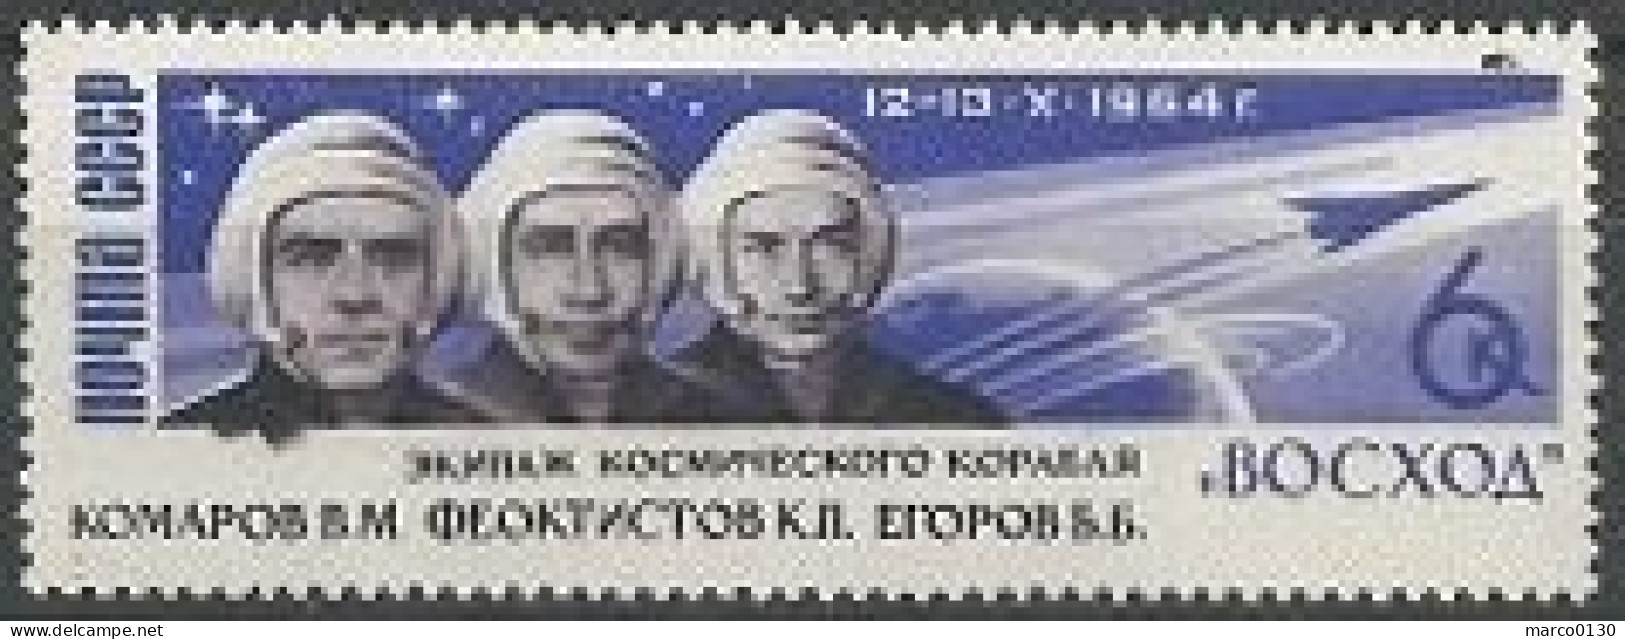 RUSSIE N° 2862 + N° 2863 + N° 2864 + N° 2865 + N° 2866 NEUF - Unused Stamps